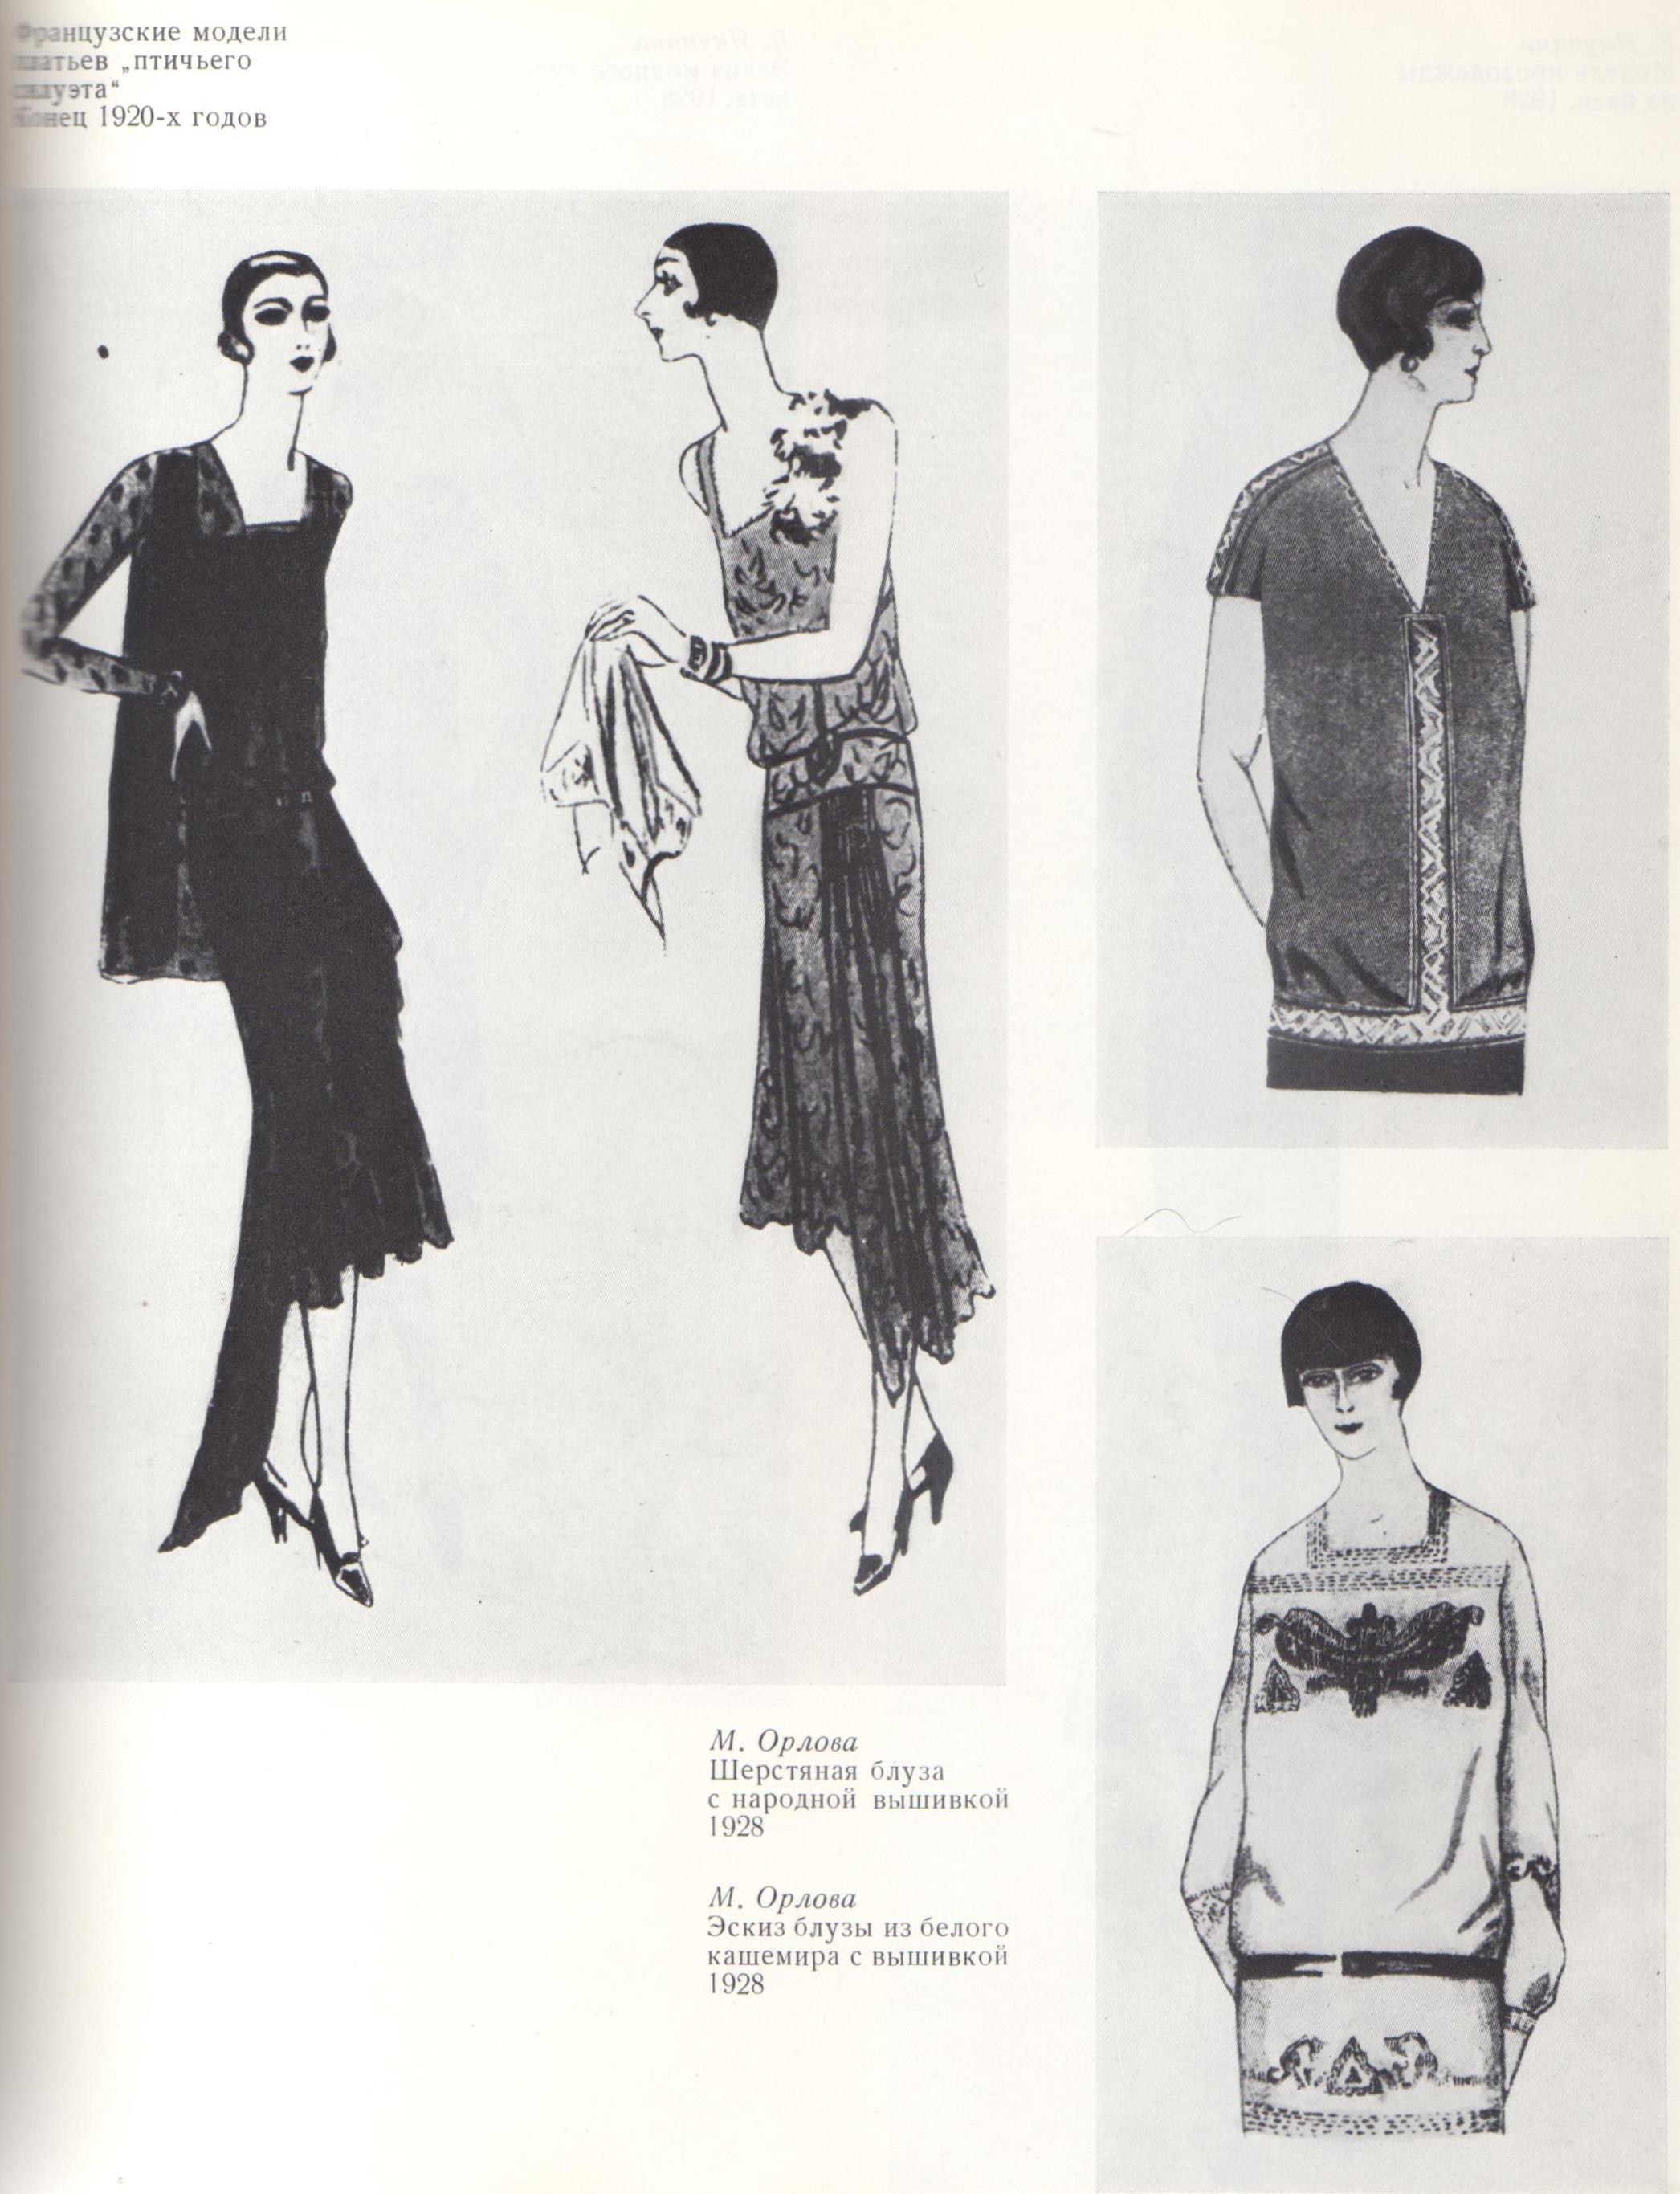 Французские модели платьев птичьего силуэта. Конец 1920-х годов